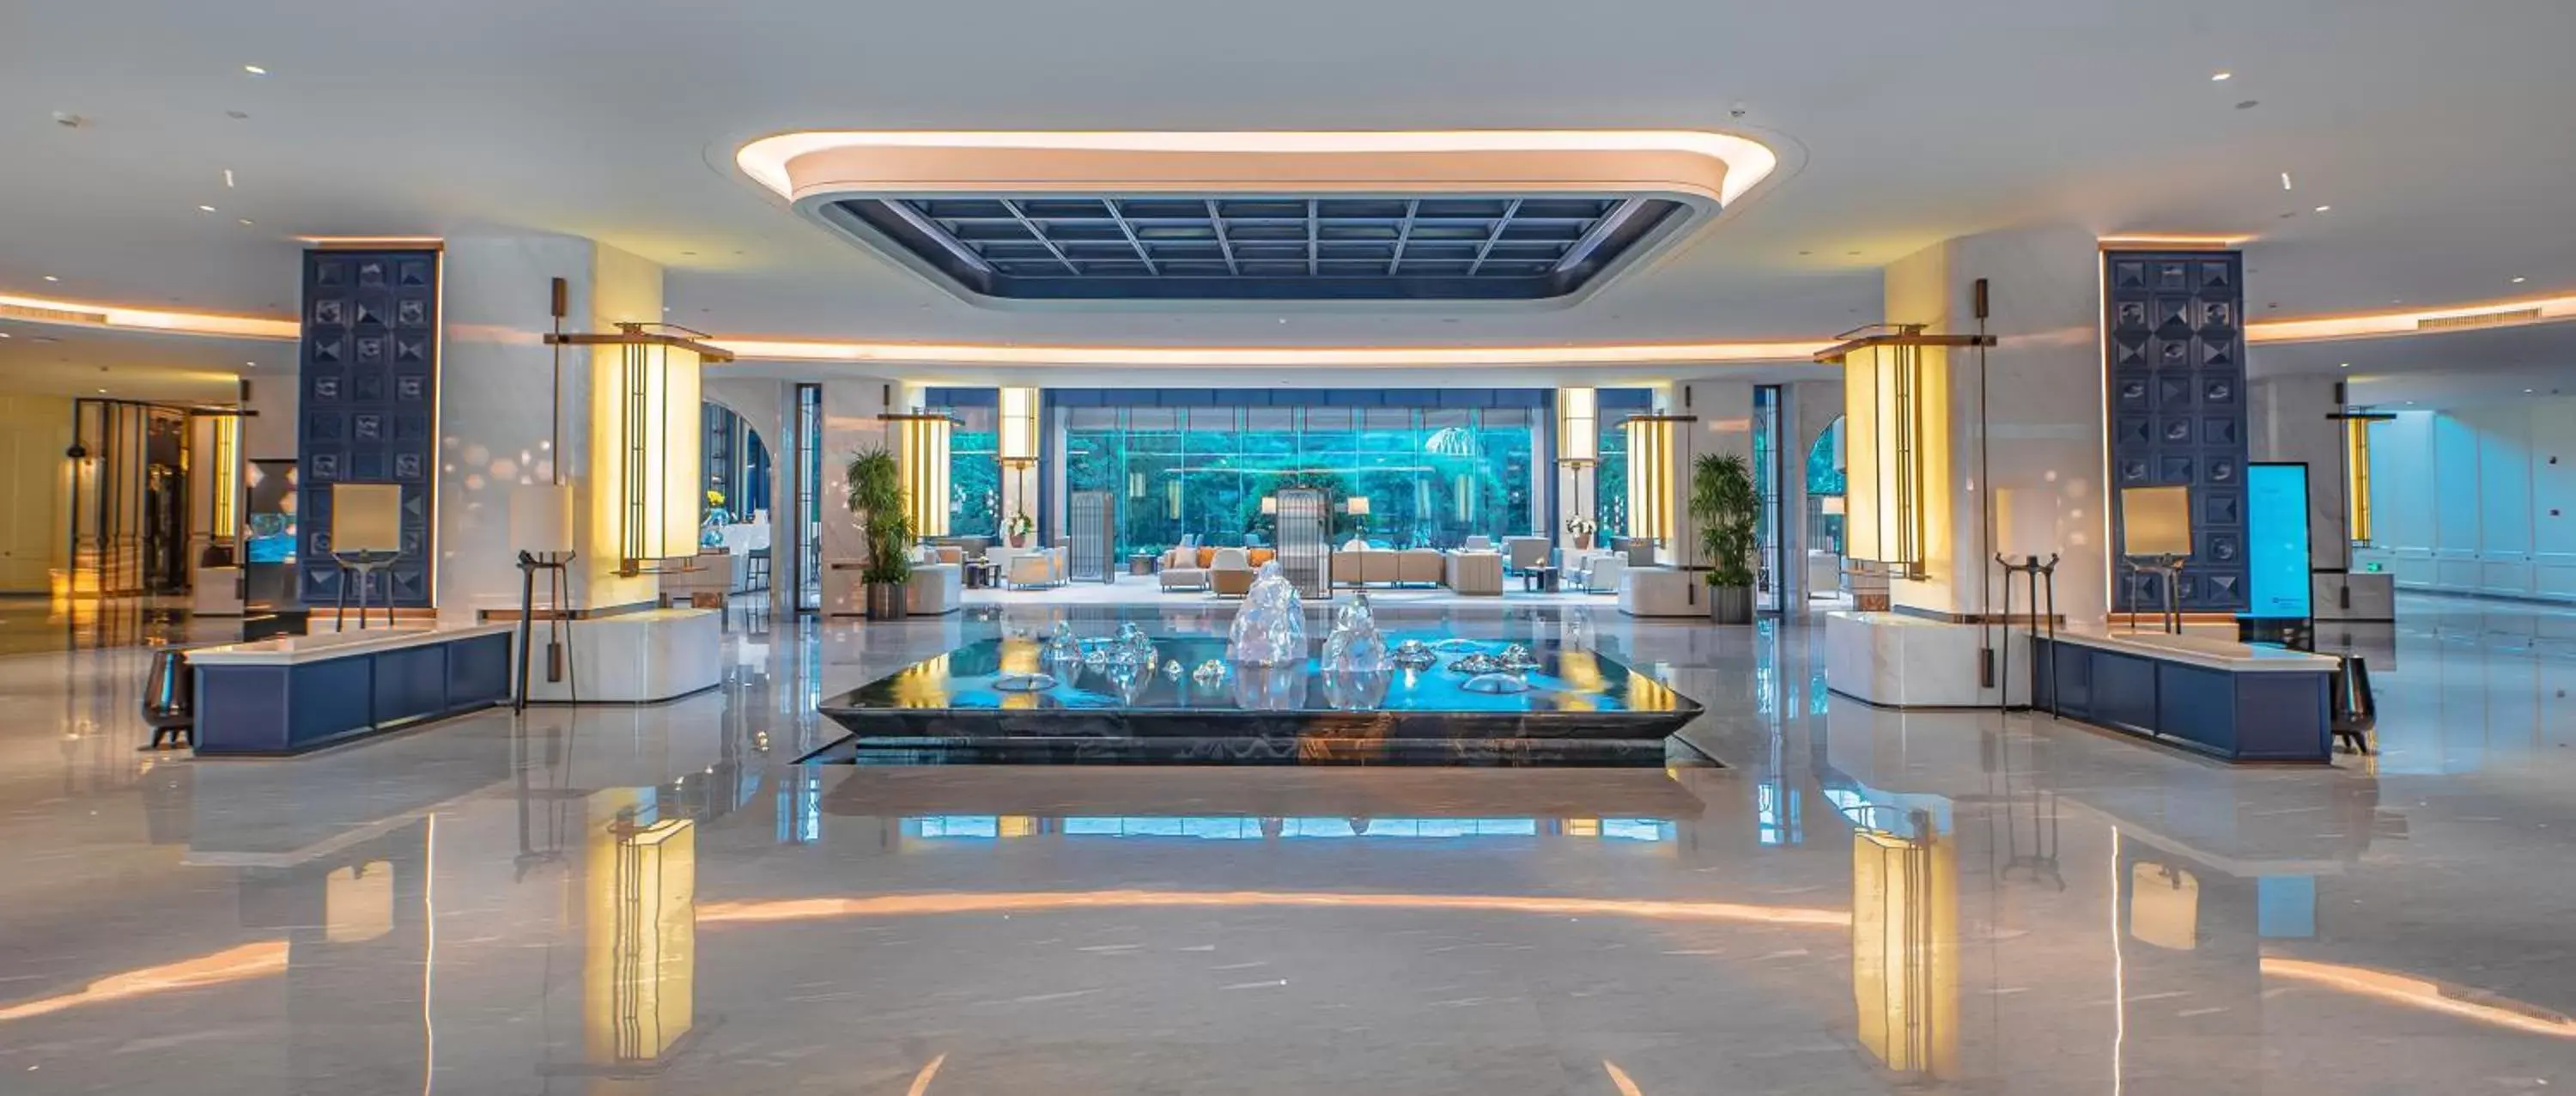 Lobby or reception in Wyndham Qingdao